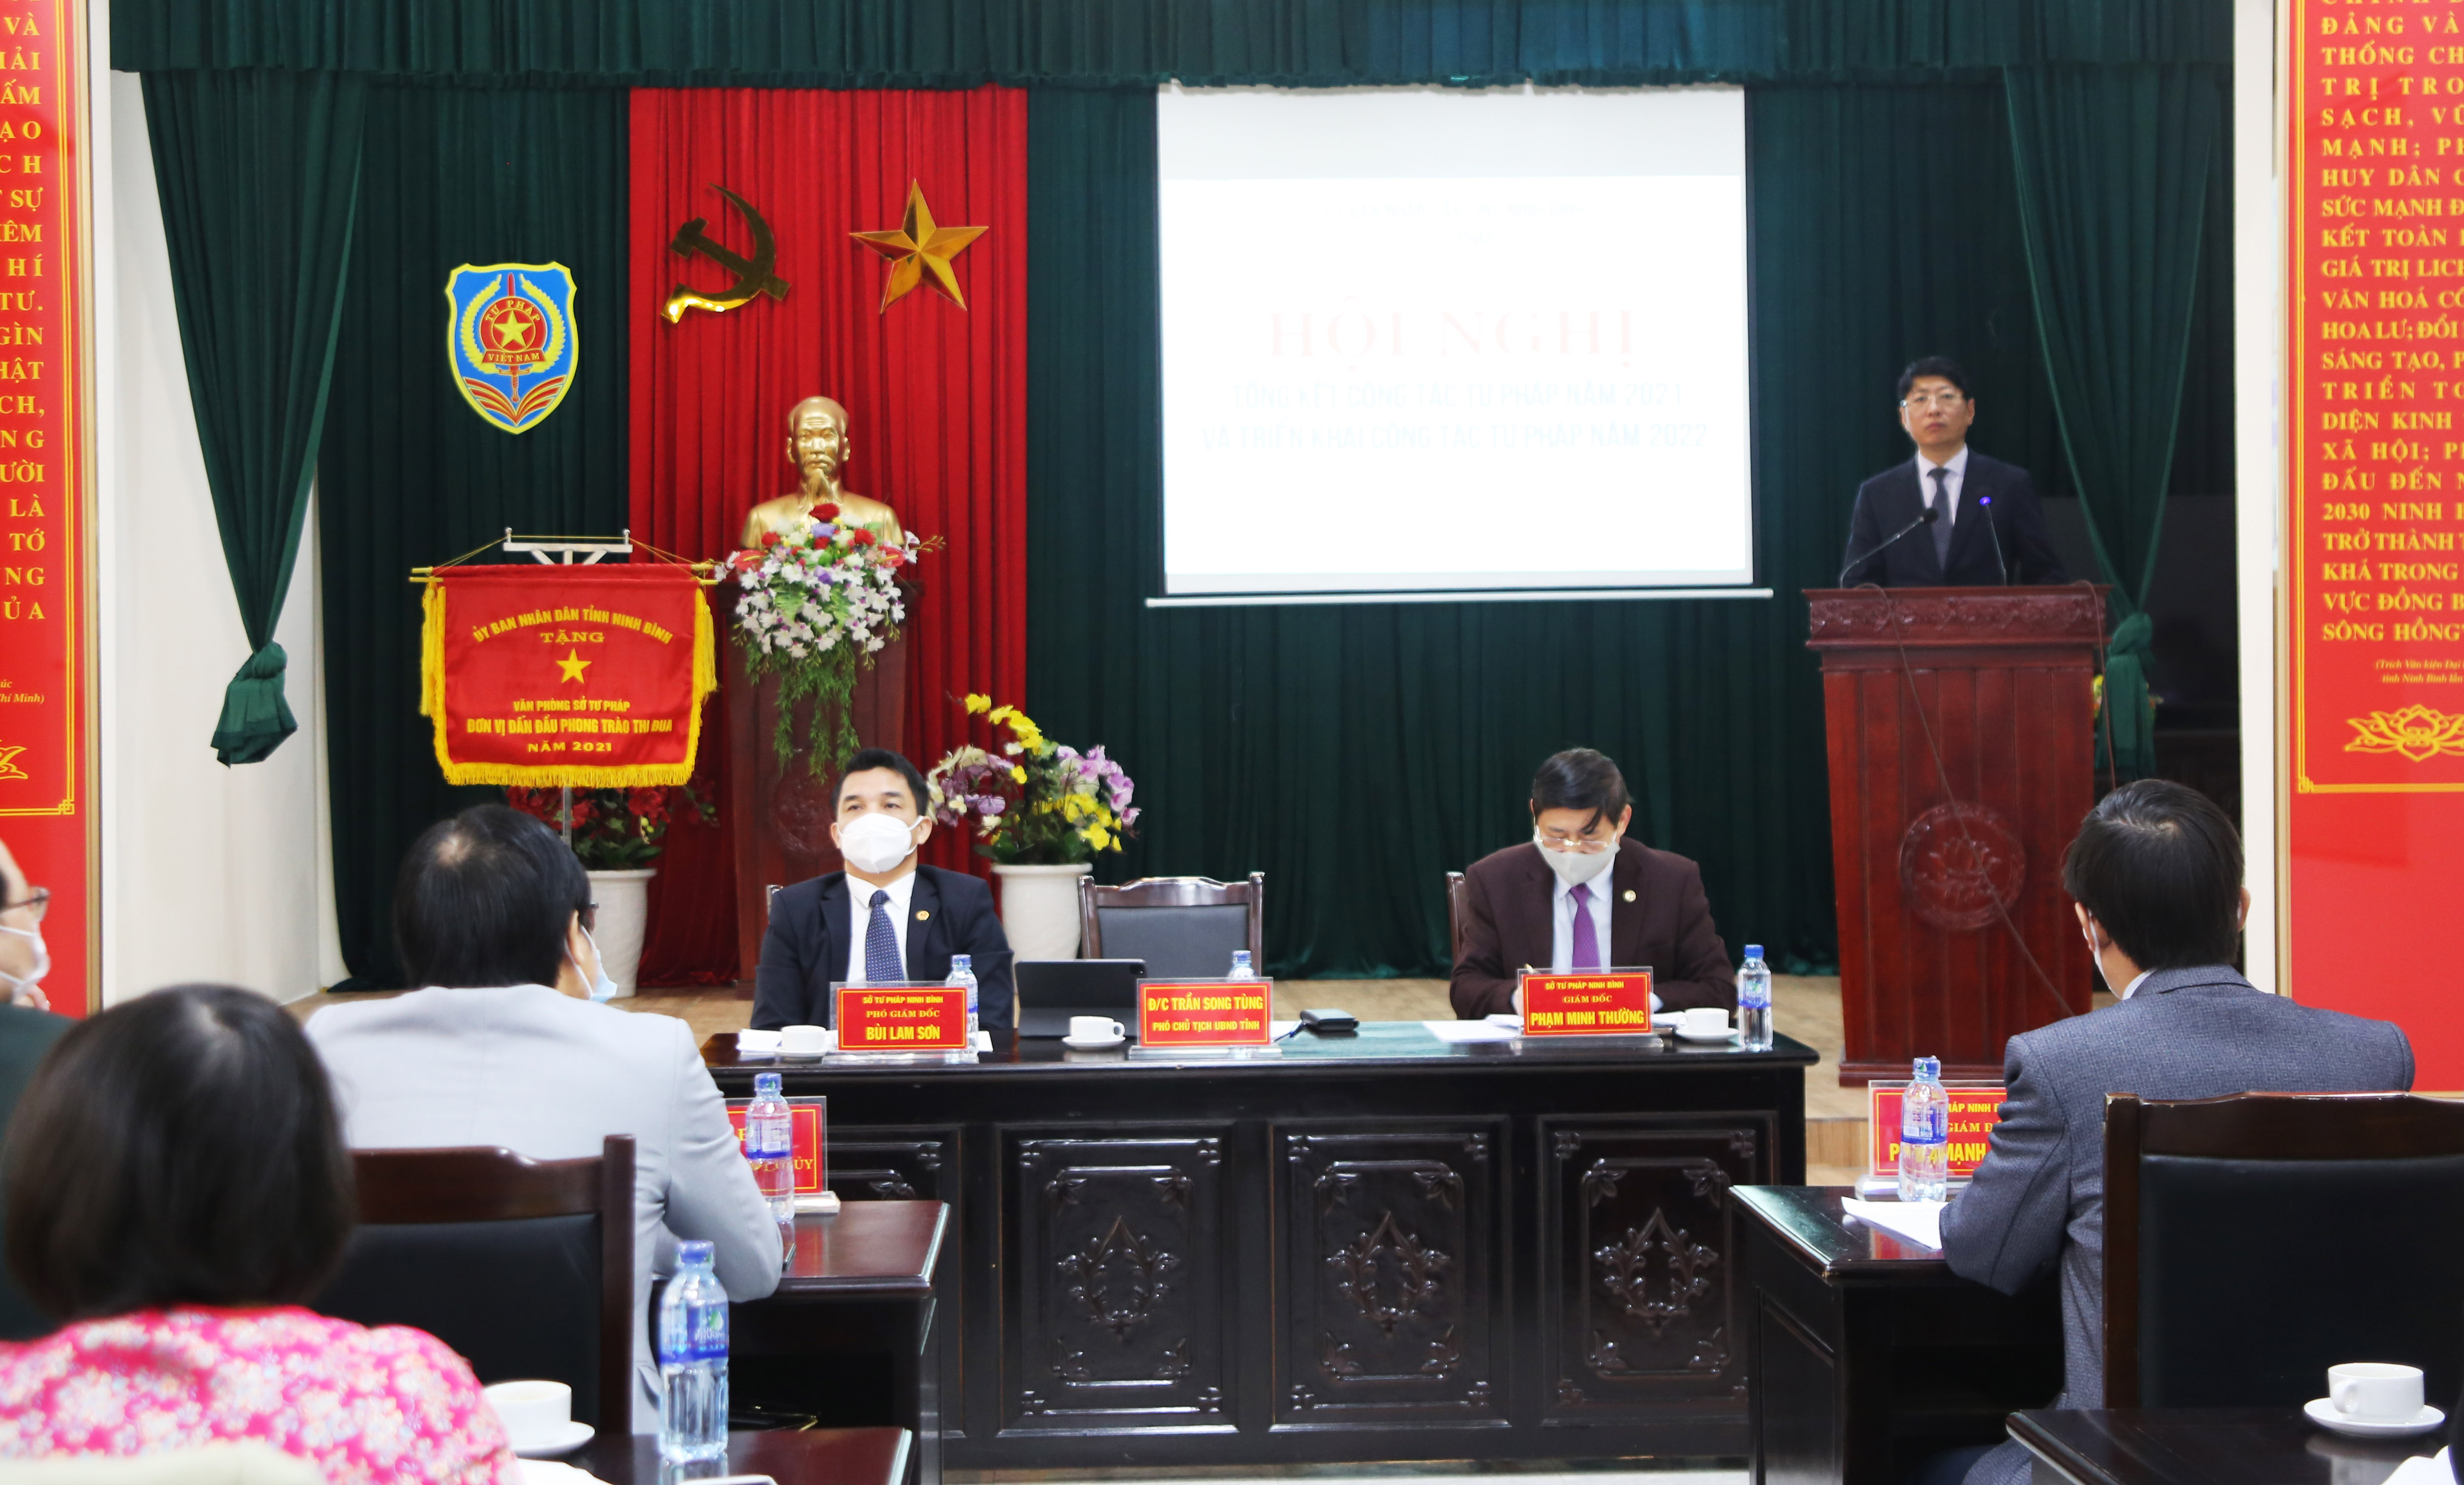 Ủy ban nhân dân huyện Hoa Lư triển khai  các nhiệm vụ Tư pháp năm 2022 trên địa bàn huyện